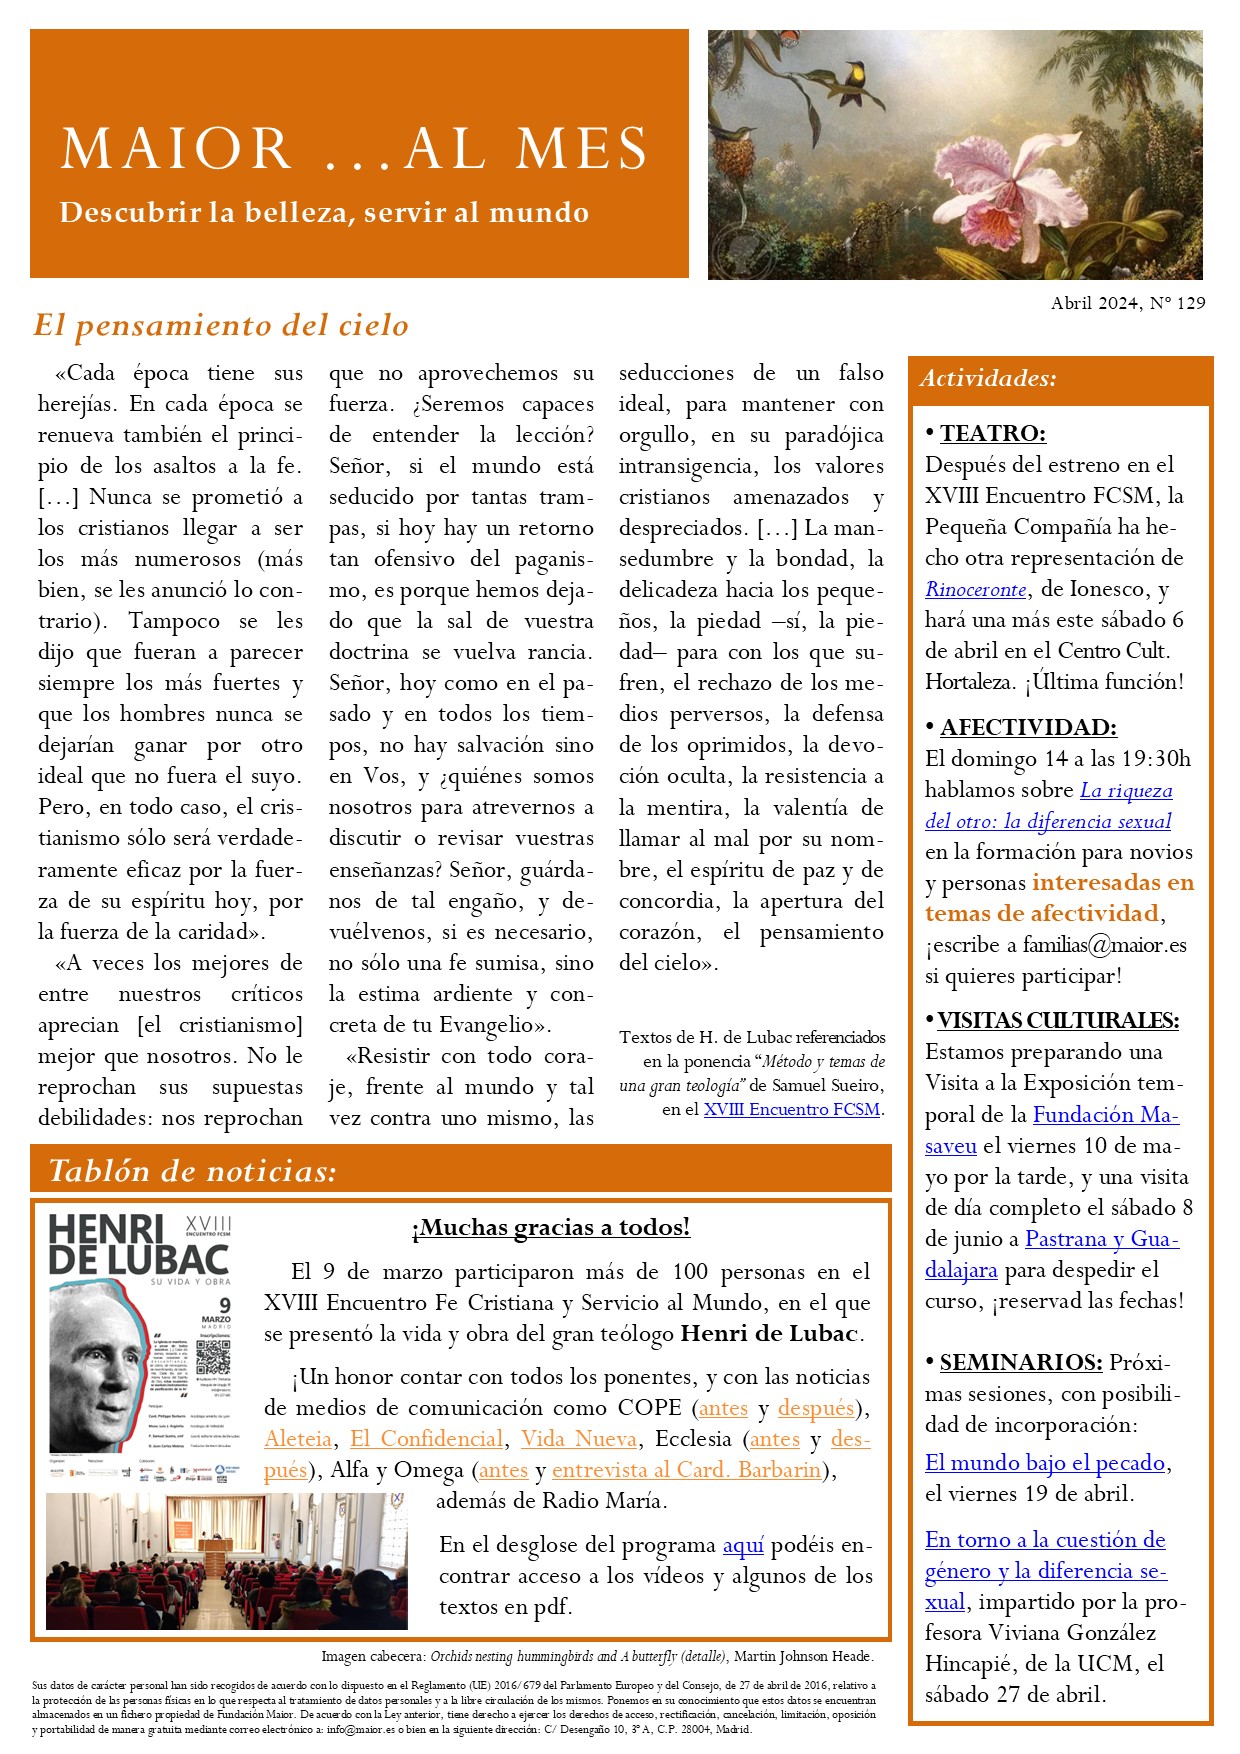 Boletín mensual de noticias y actividades de la Fundación Maior. Edición de abril 2024